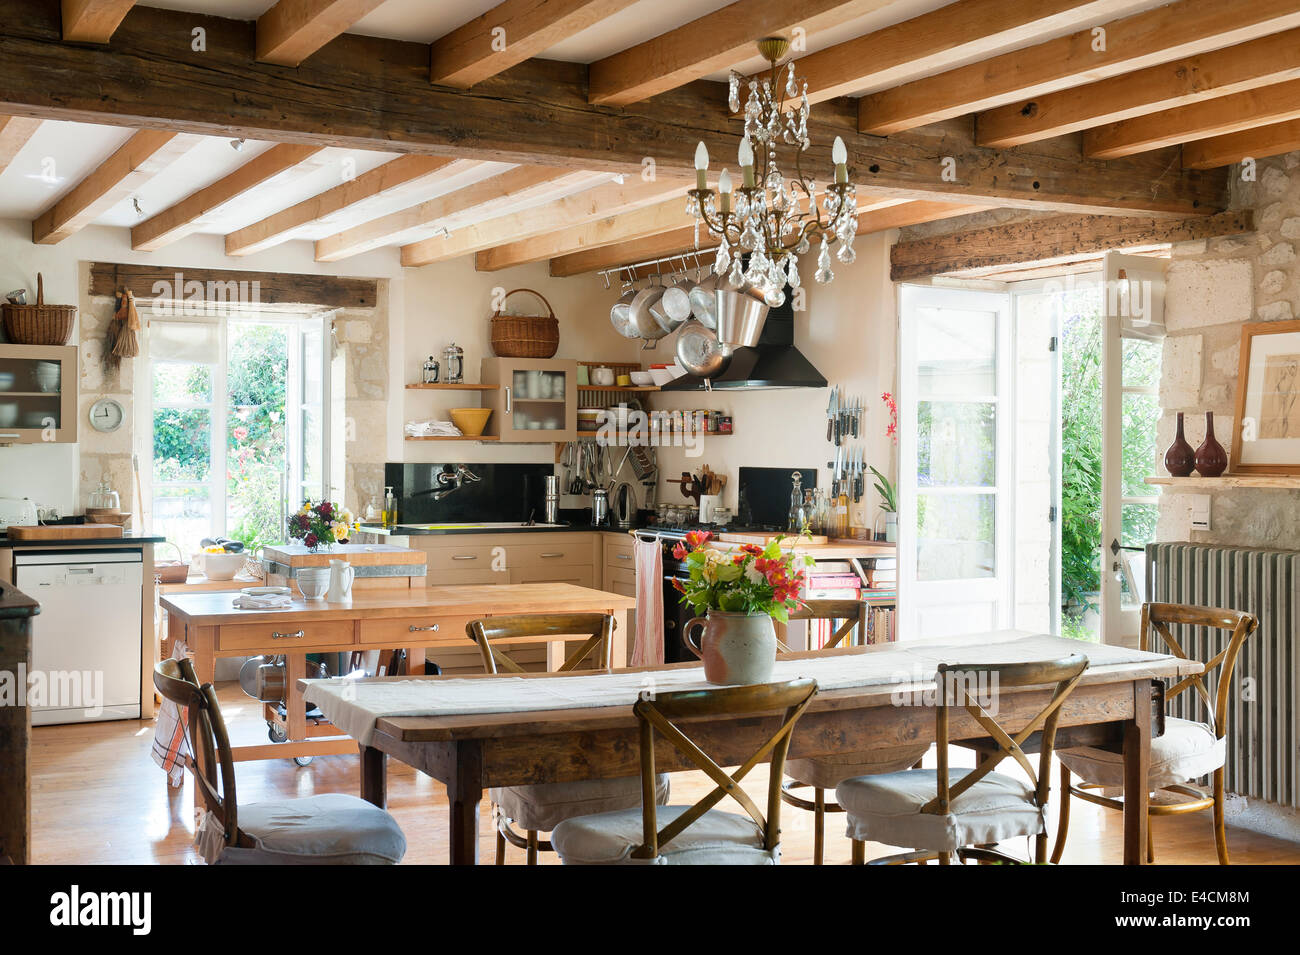 Rustikale Küche mit französischer Esstisch aus Holz, decken-Balken,  Glas-Kronleuchter und traditionellen Camargue-Stil Speisen Stockfotografie  - Alamy